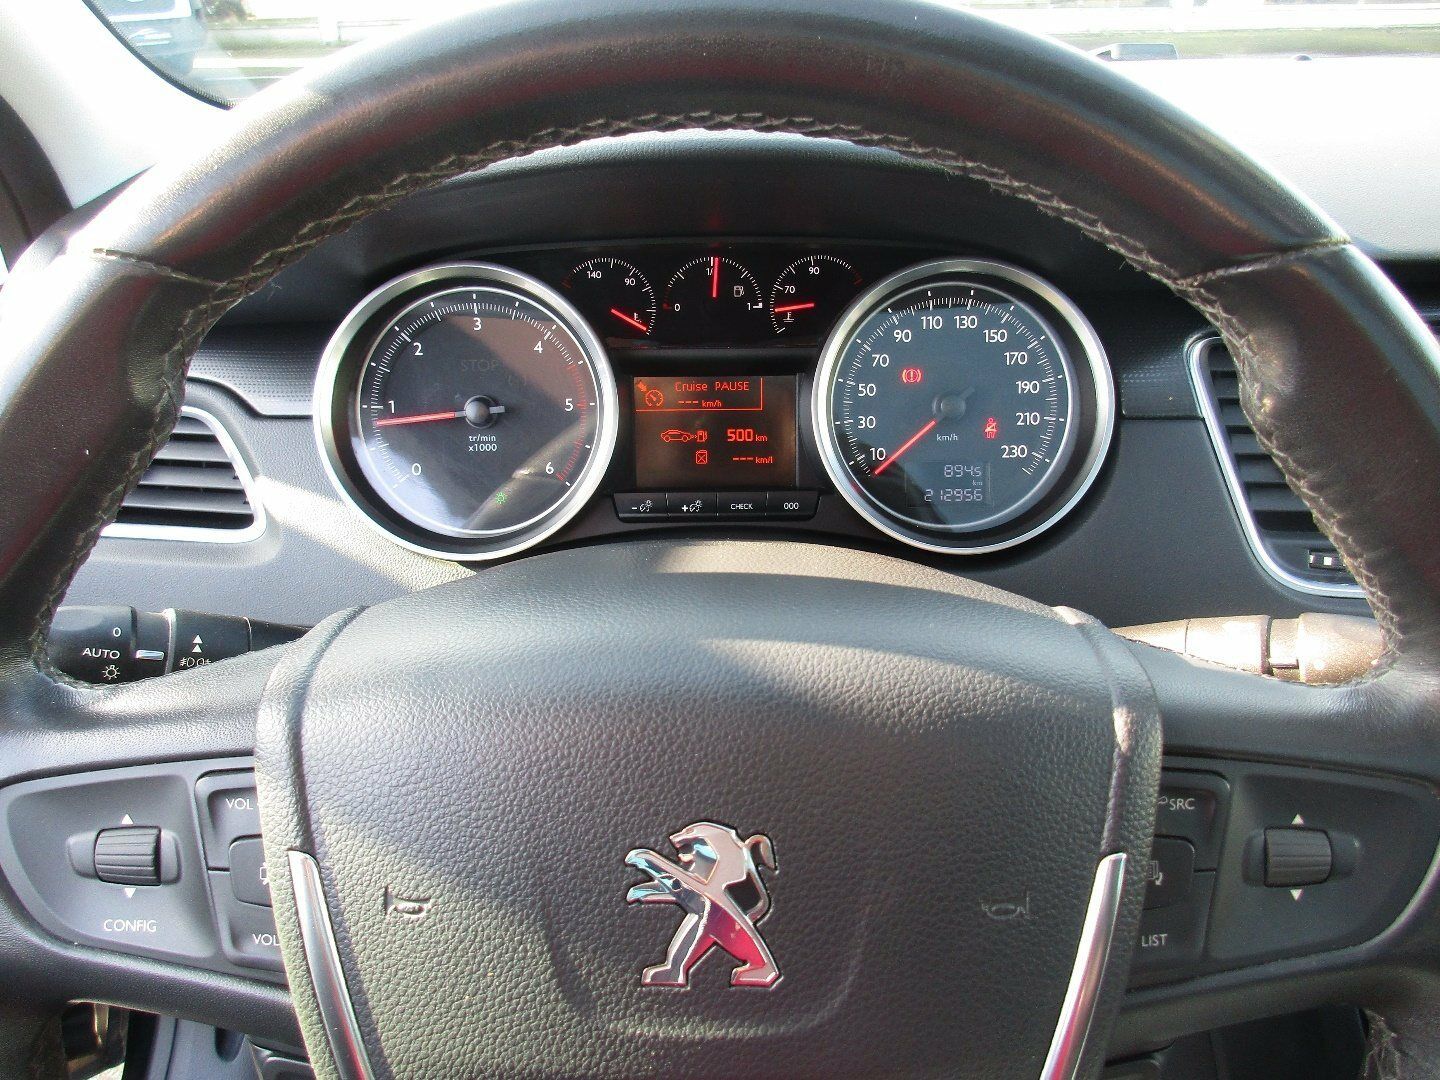 Peugeot 508 2011